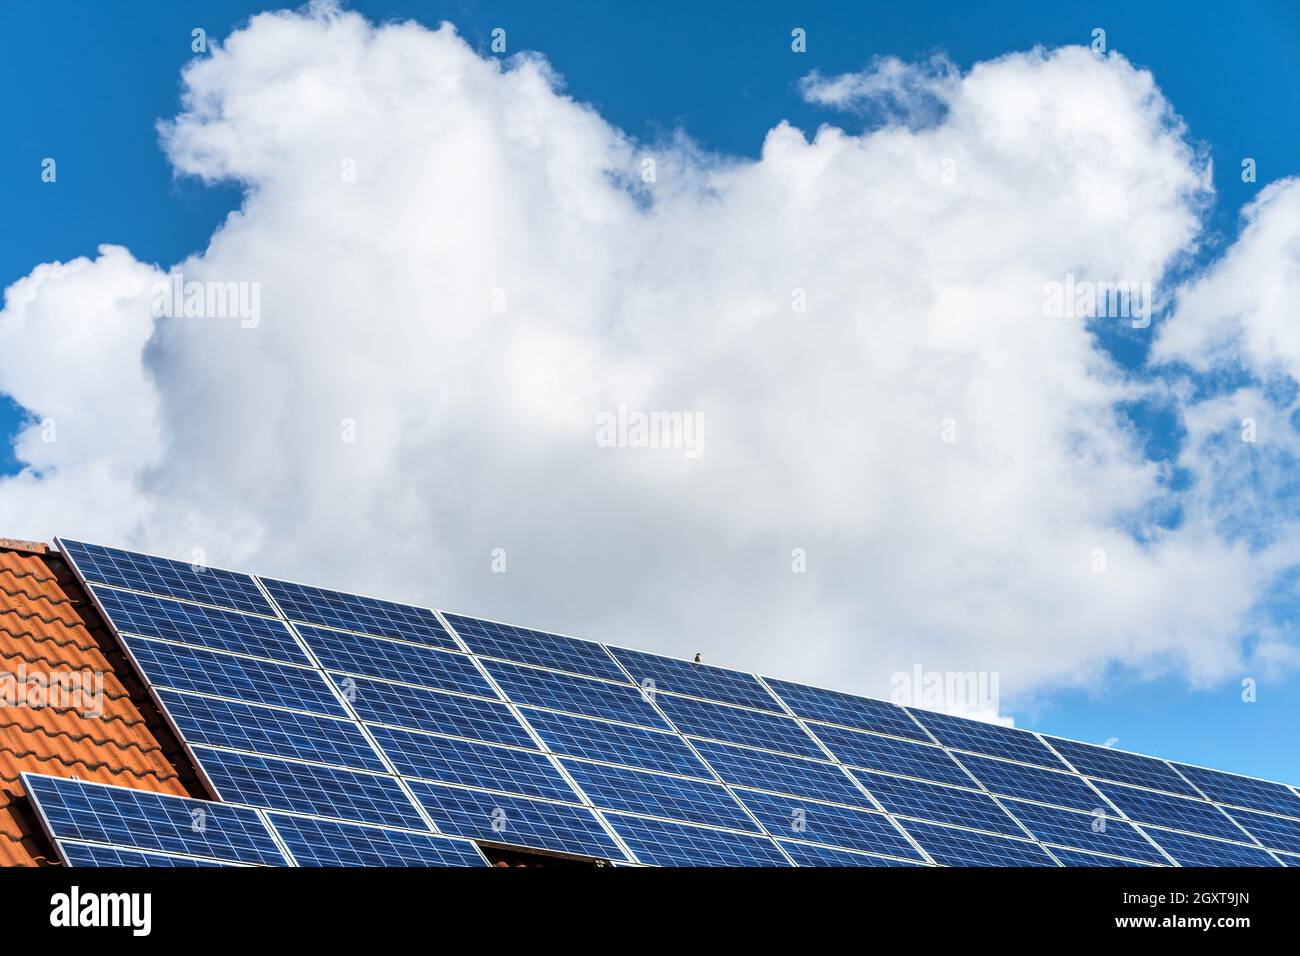 Sonnenkollektoren und Solaranlage Photovoltaik auf dem Dach eines Privathauses und dem weiß-blauen bayerischen Himmel Stockfoto